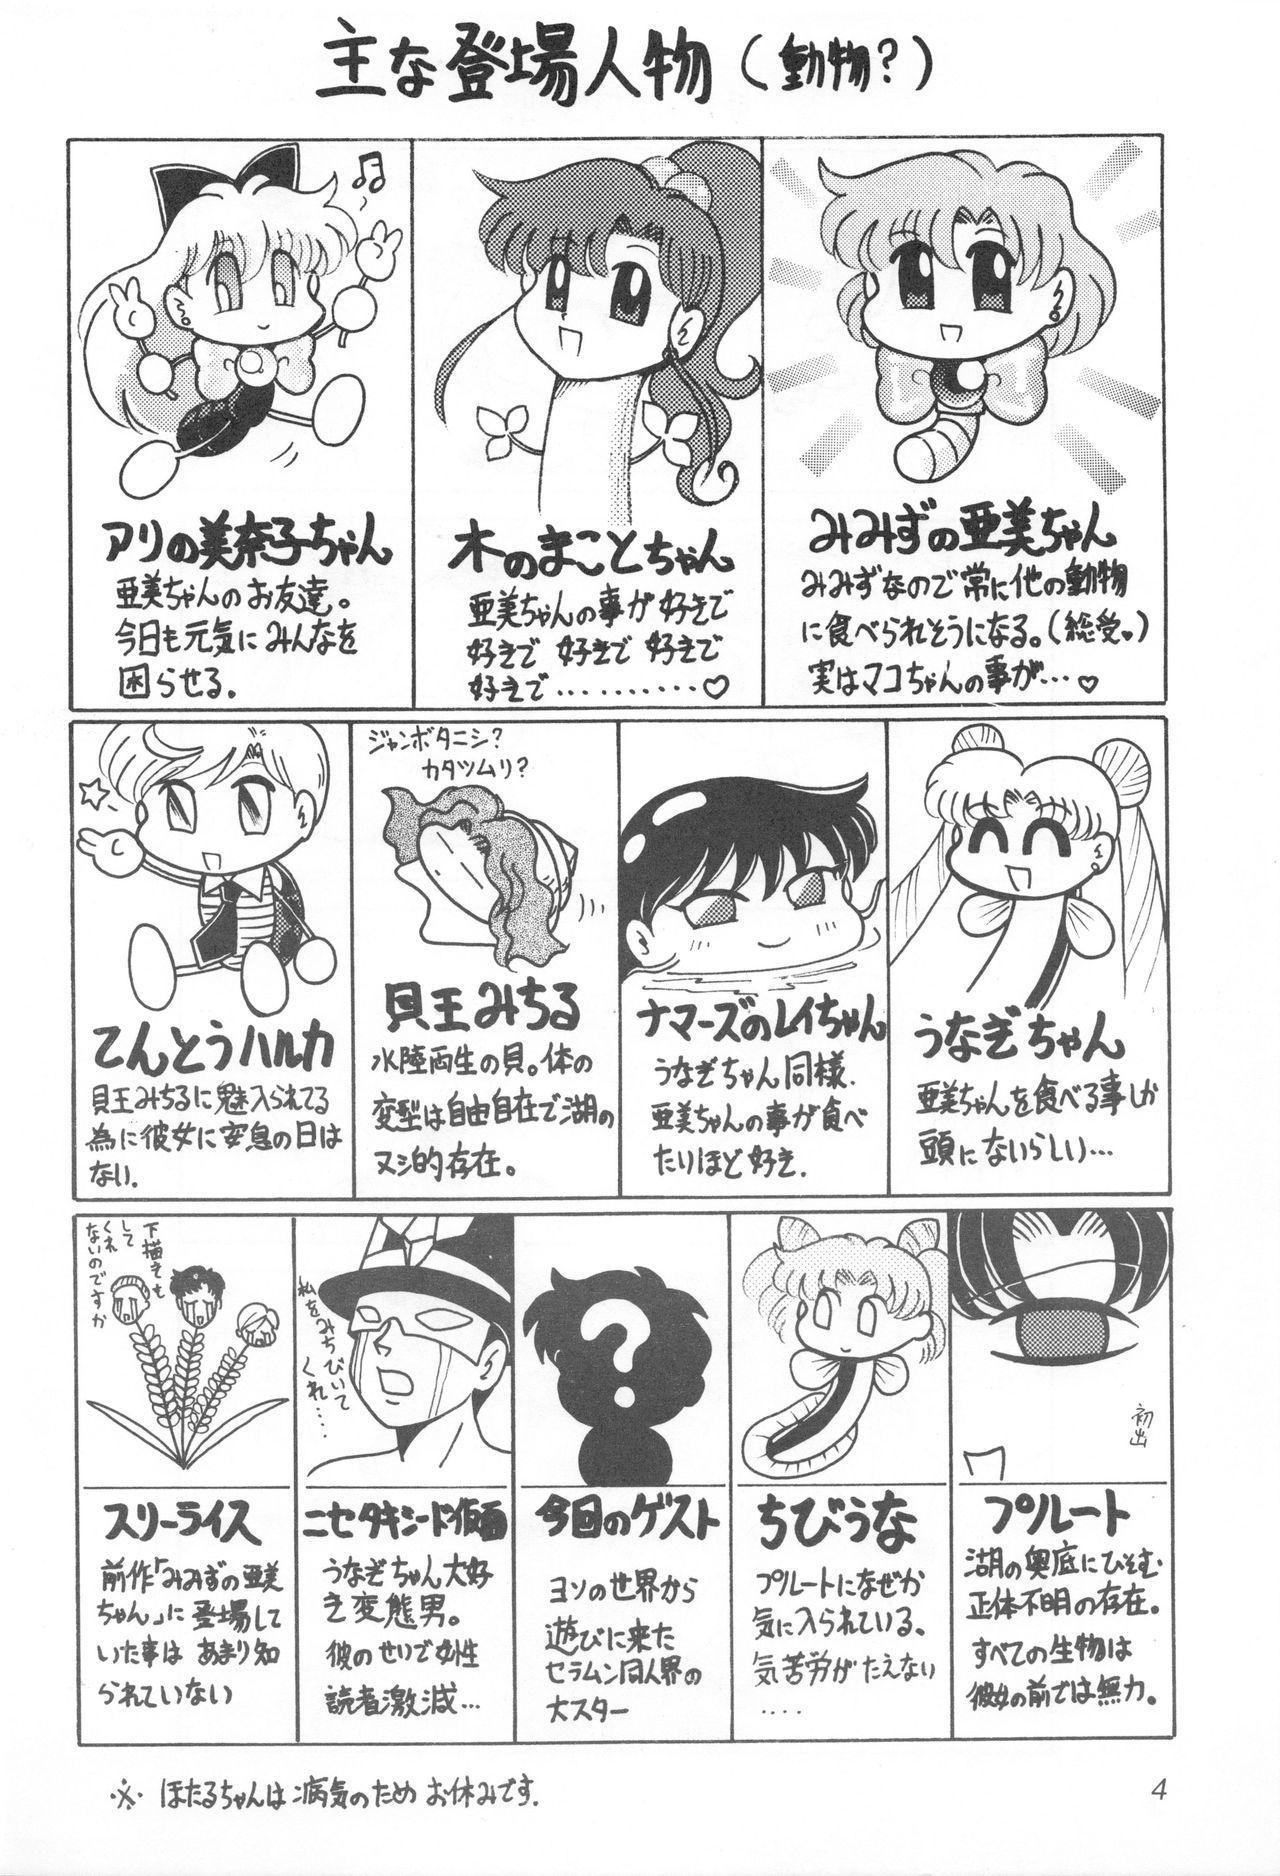 Blowjob Mimizu no Ami-chan Vol. 2 - Sailor moon Exotic - Page 3